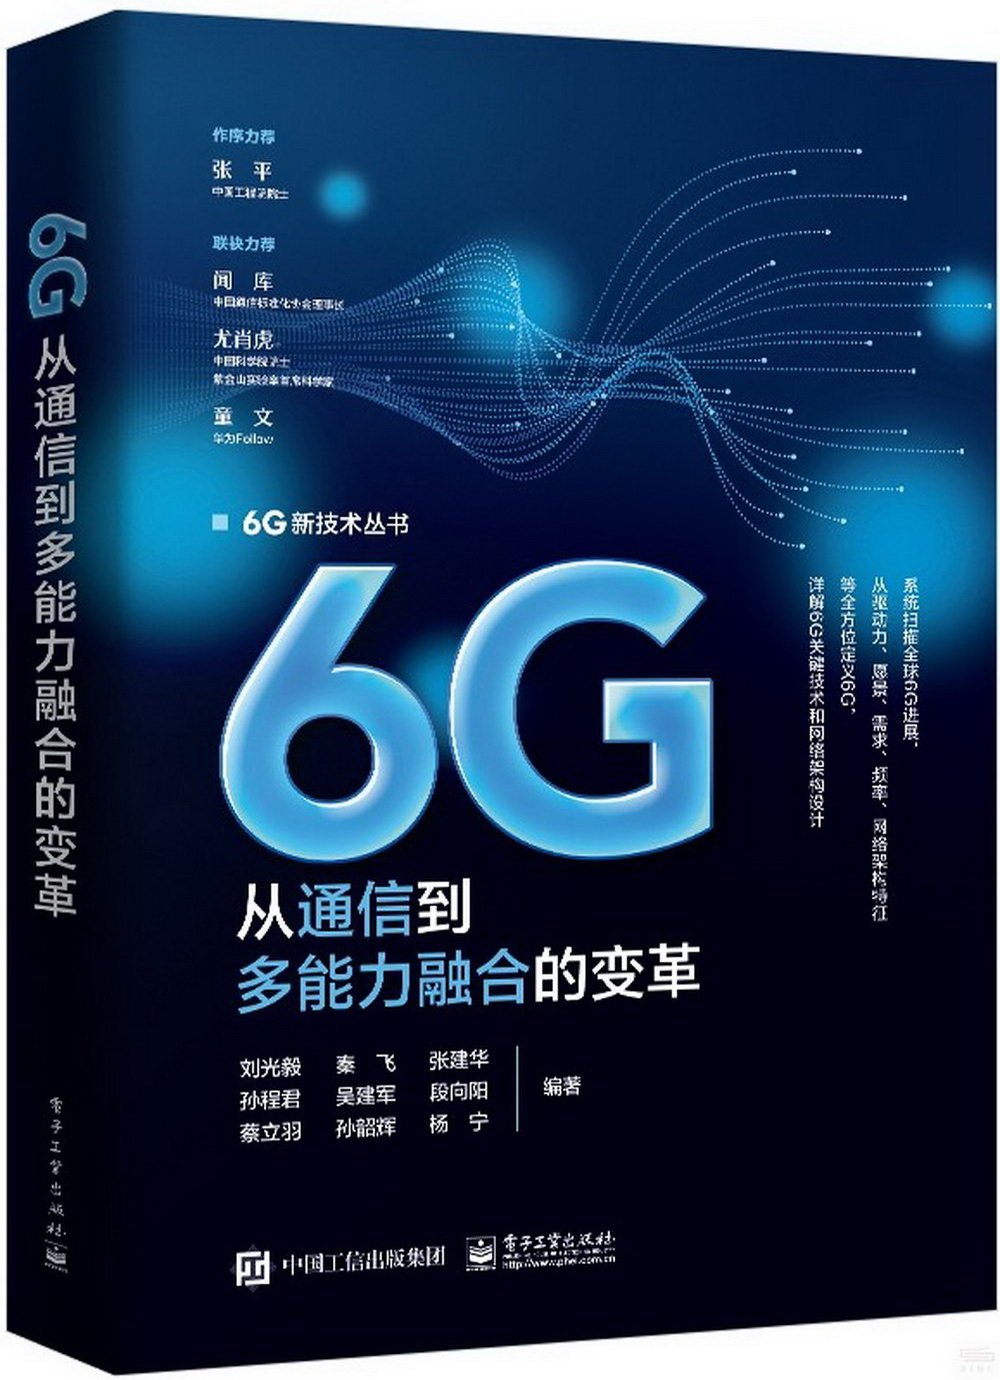 6G：從通信到多能力融合的變革